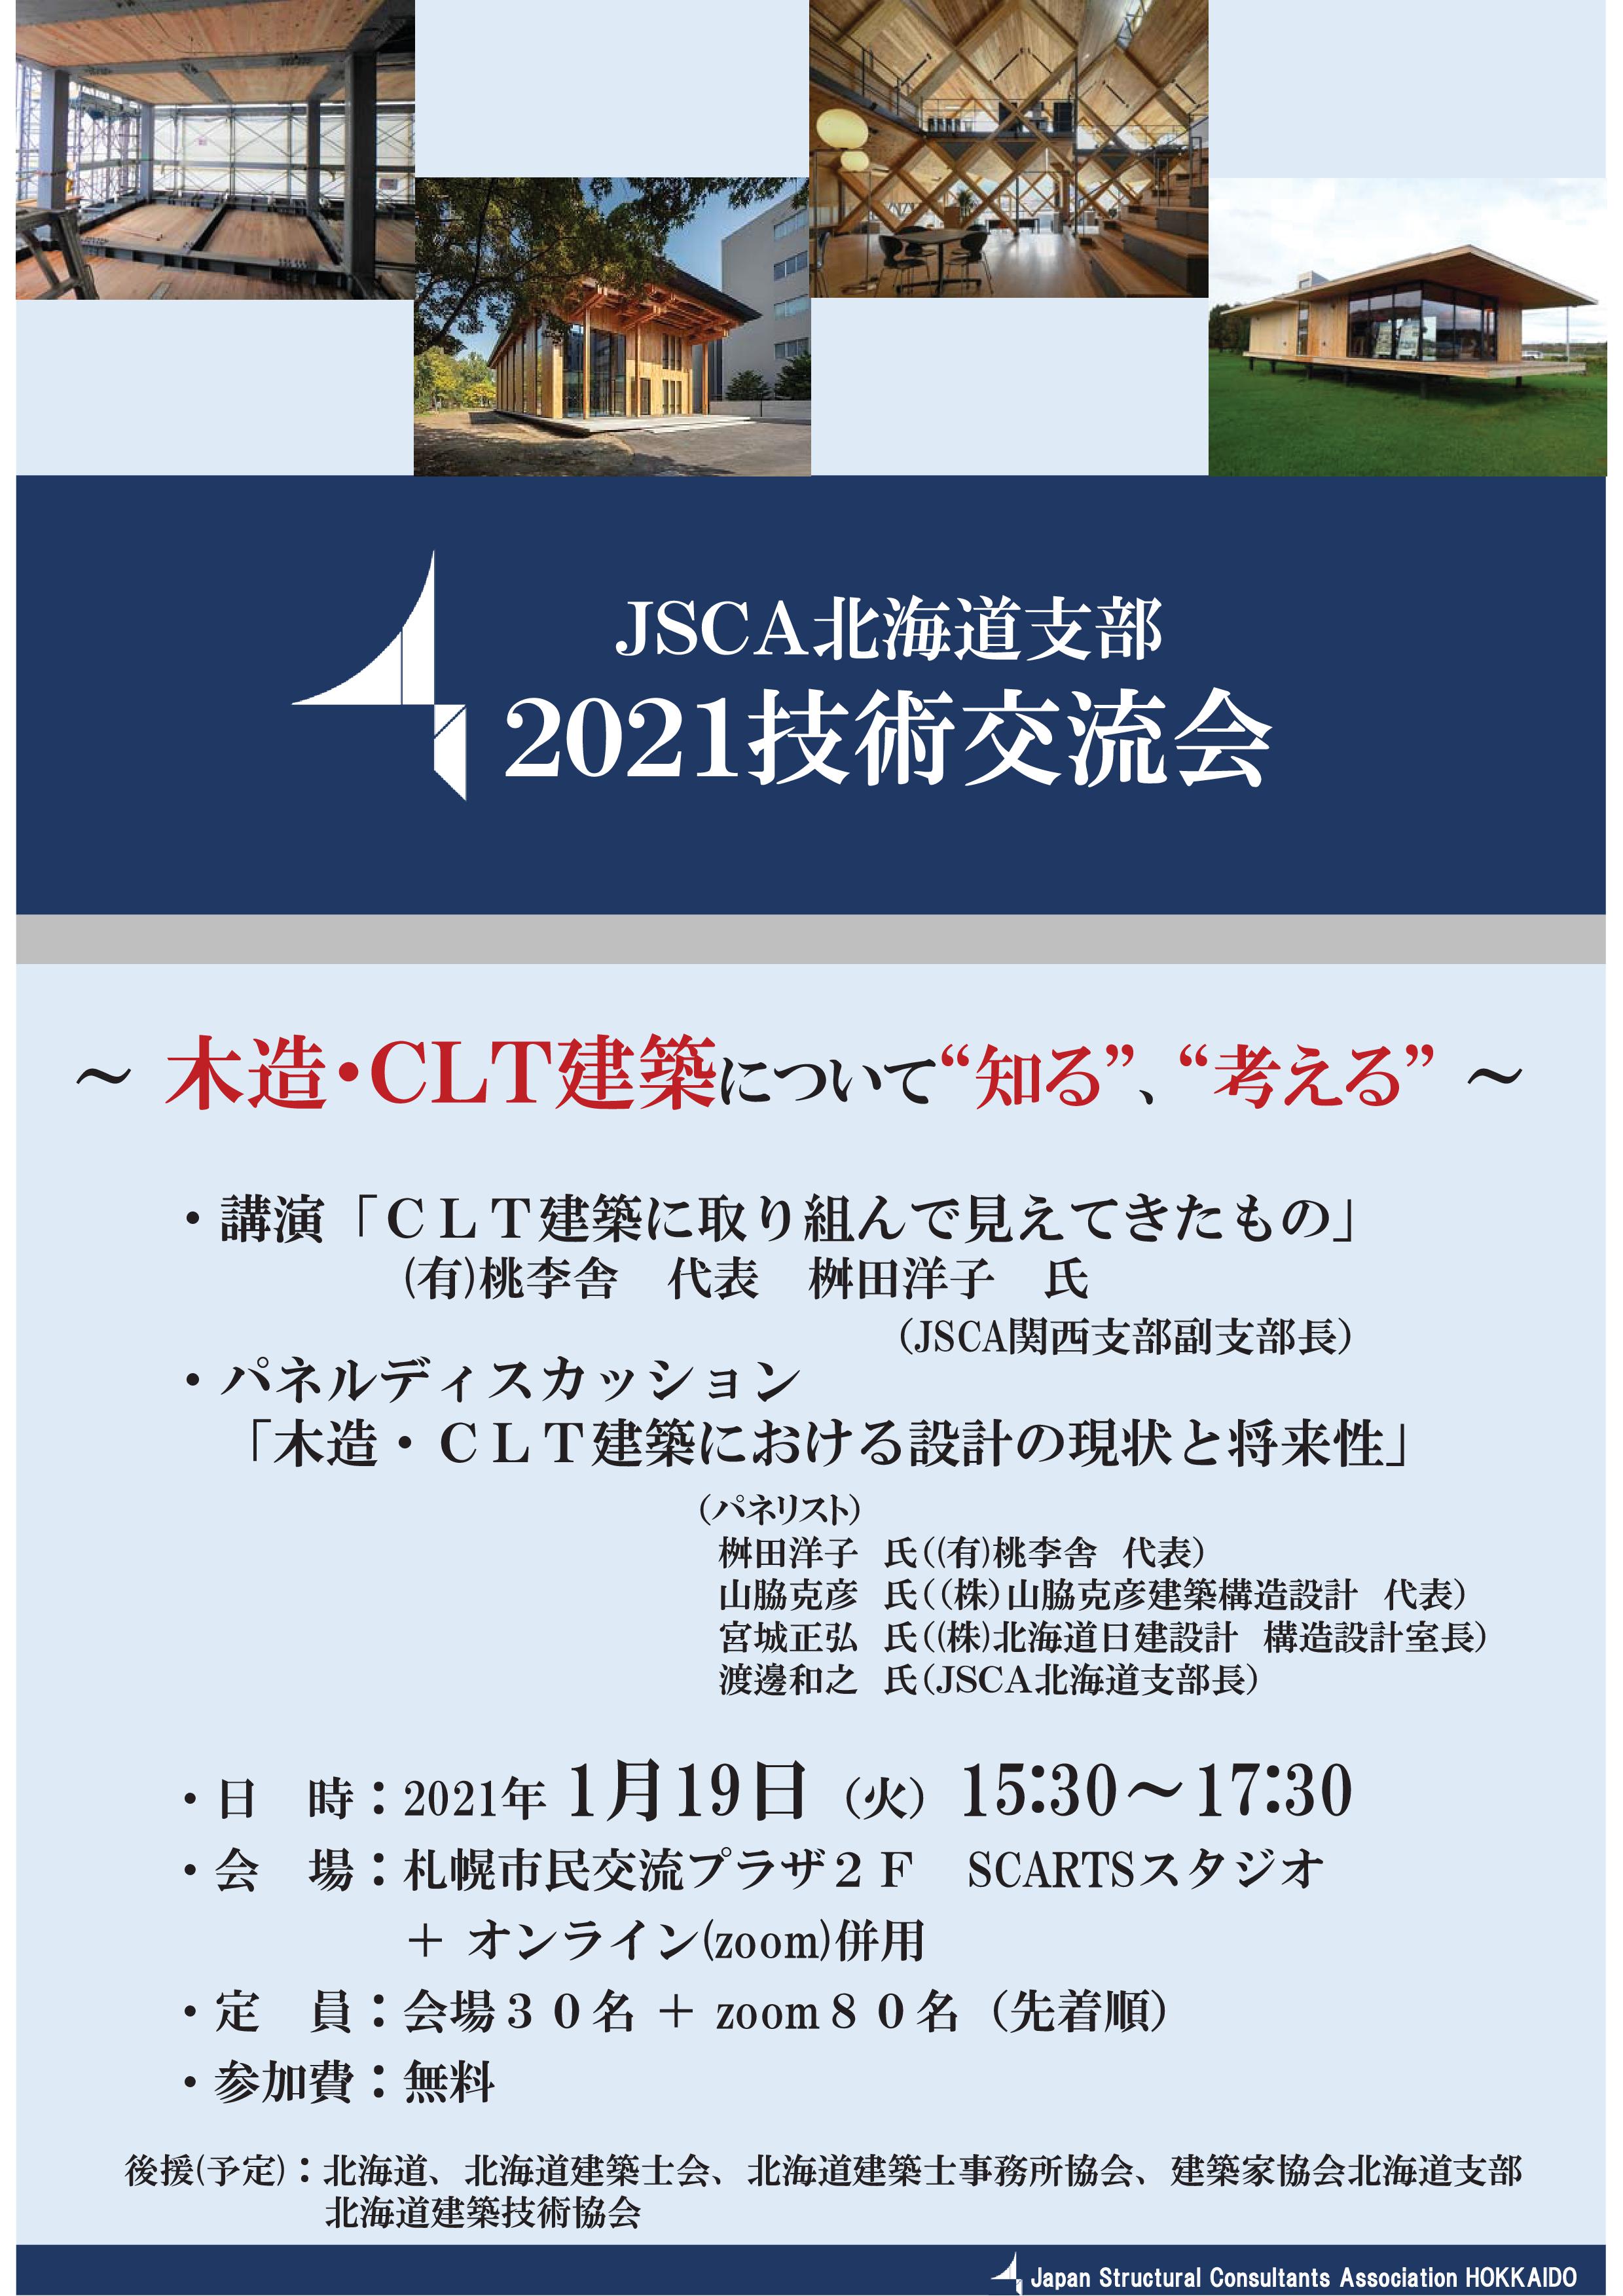 JSCA北海道支部 2021 技術交流会イメージ